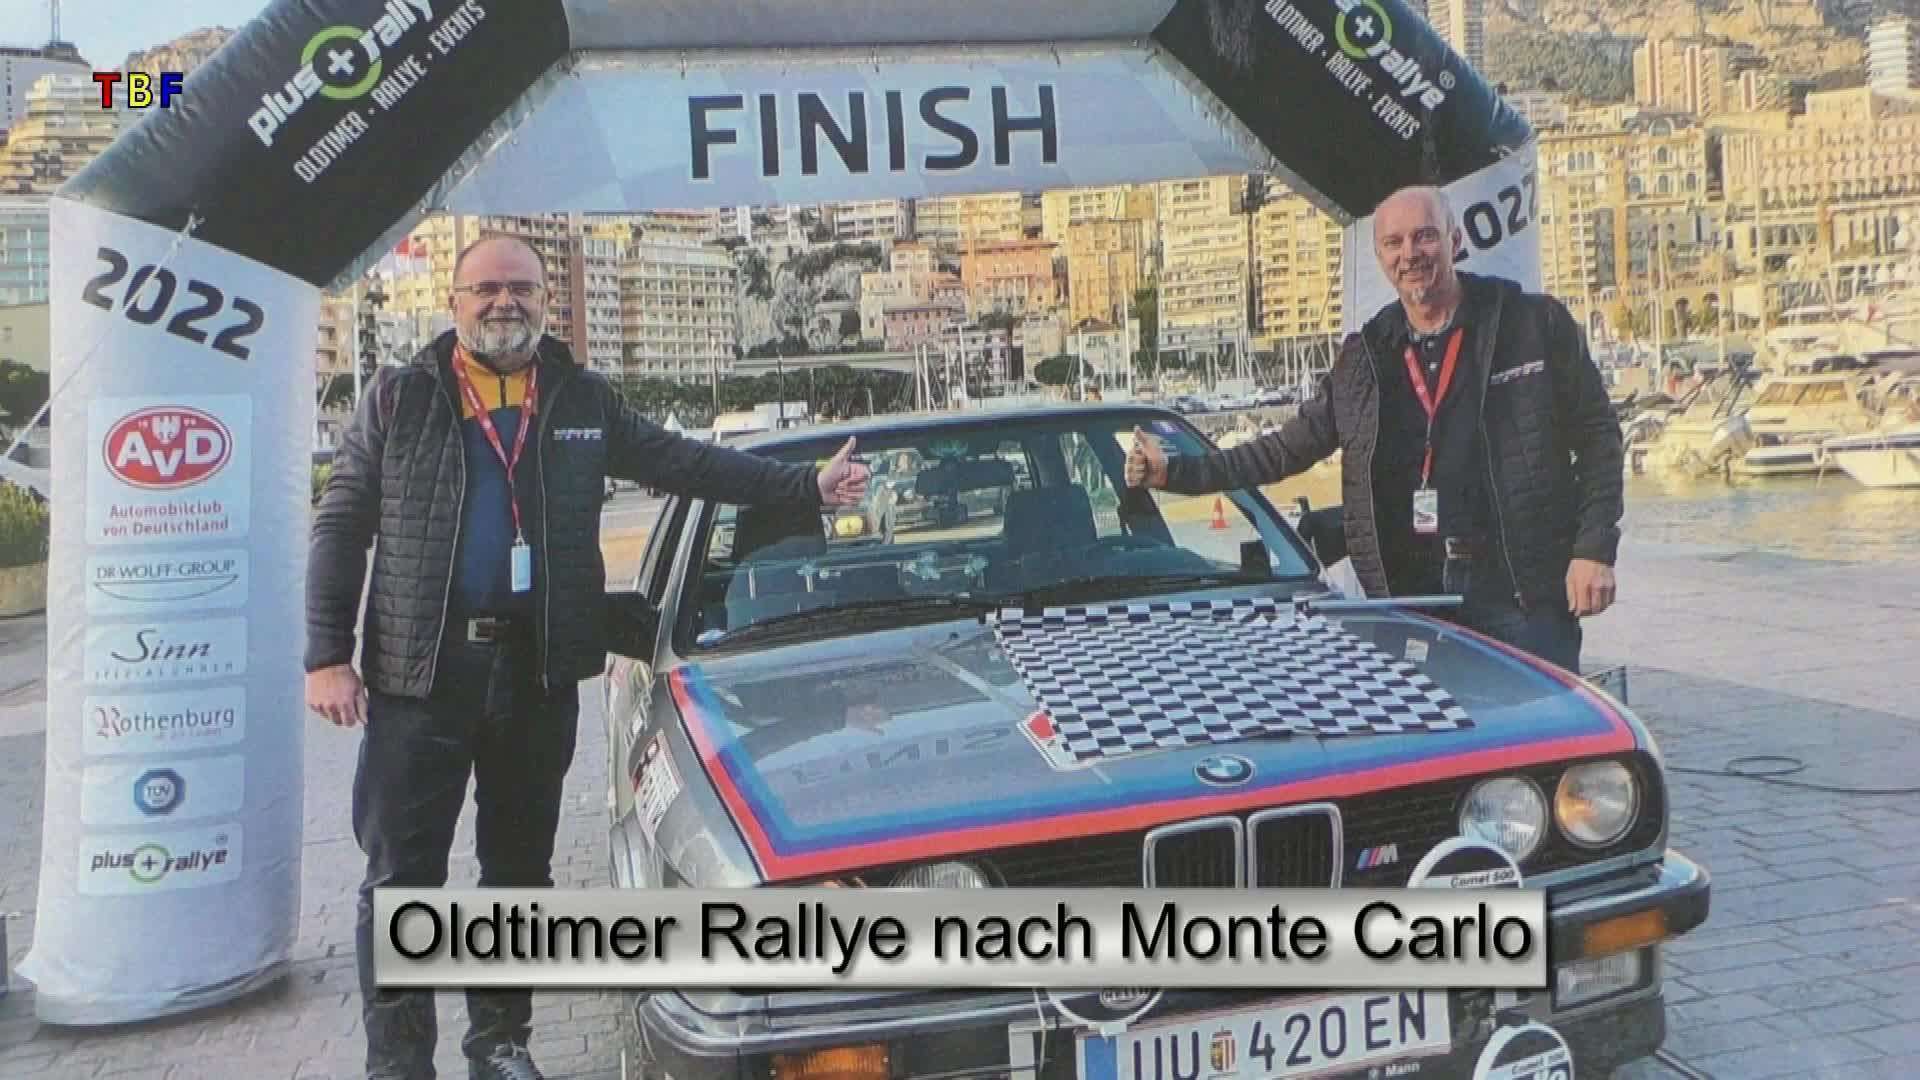 Oldtimer Rallye nach Monte Carlo